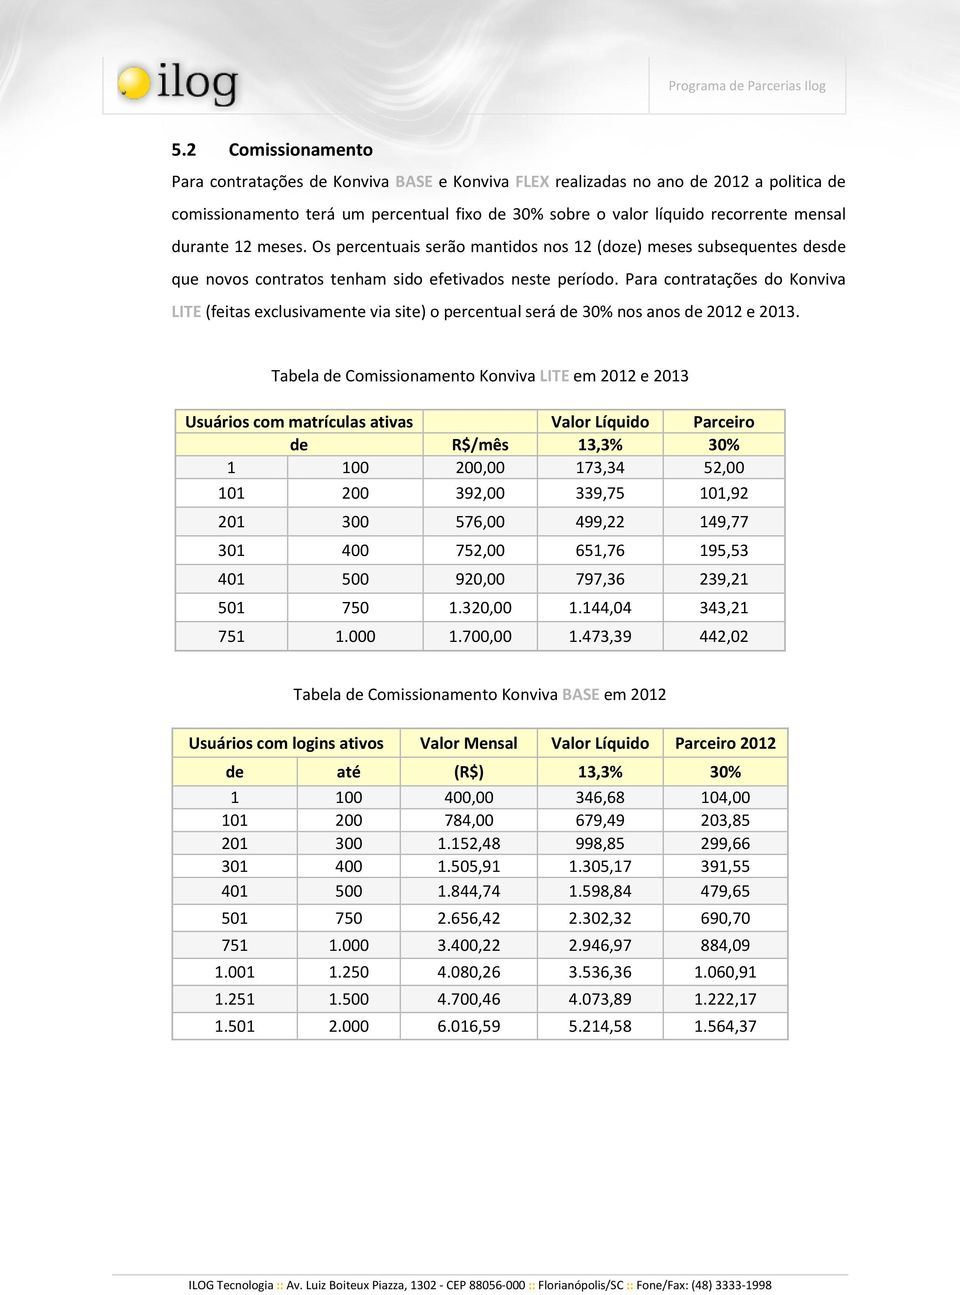 Para contratações do Konviva LITE (feitas exclusivamente via site) o percentual será de 30% nos anos de 2012 e 2013.